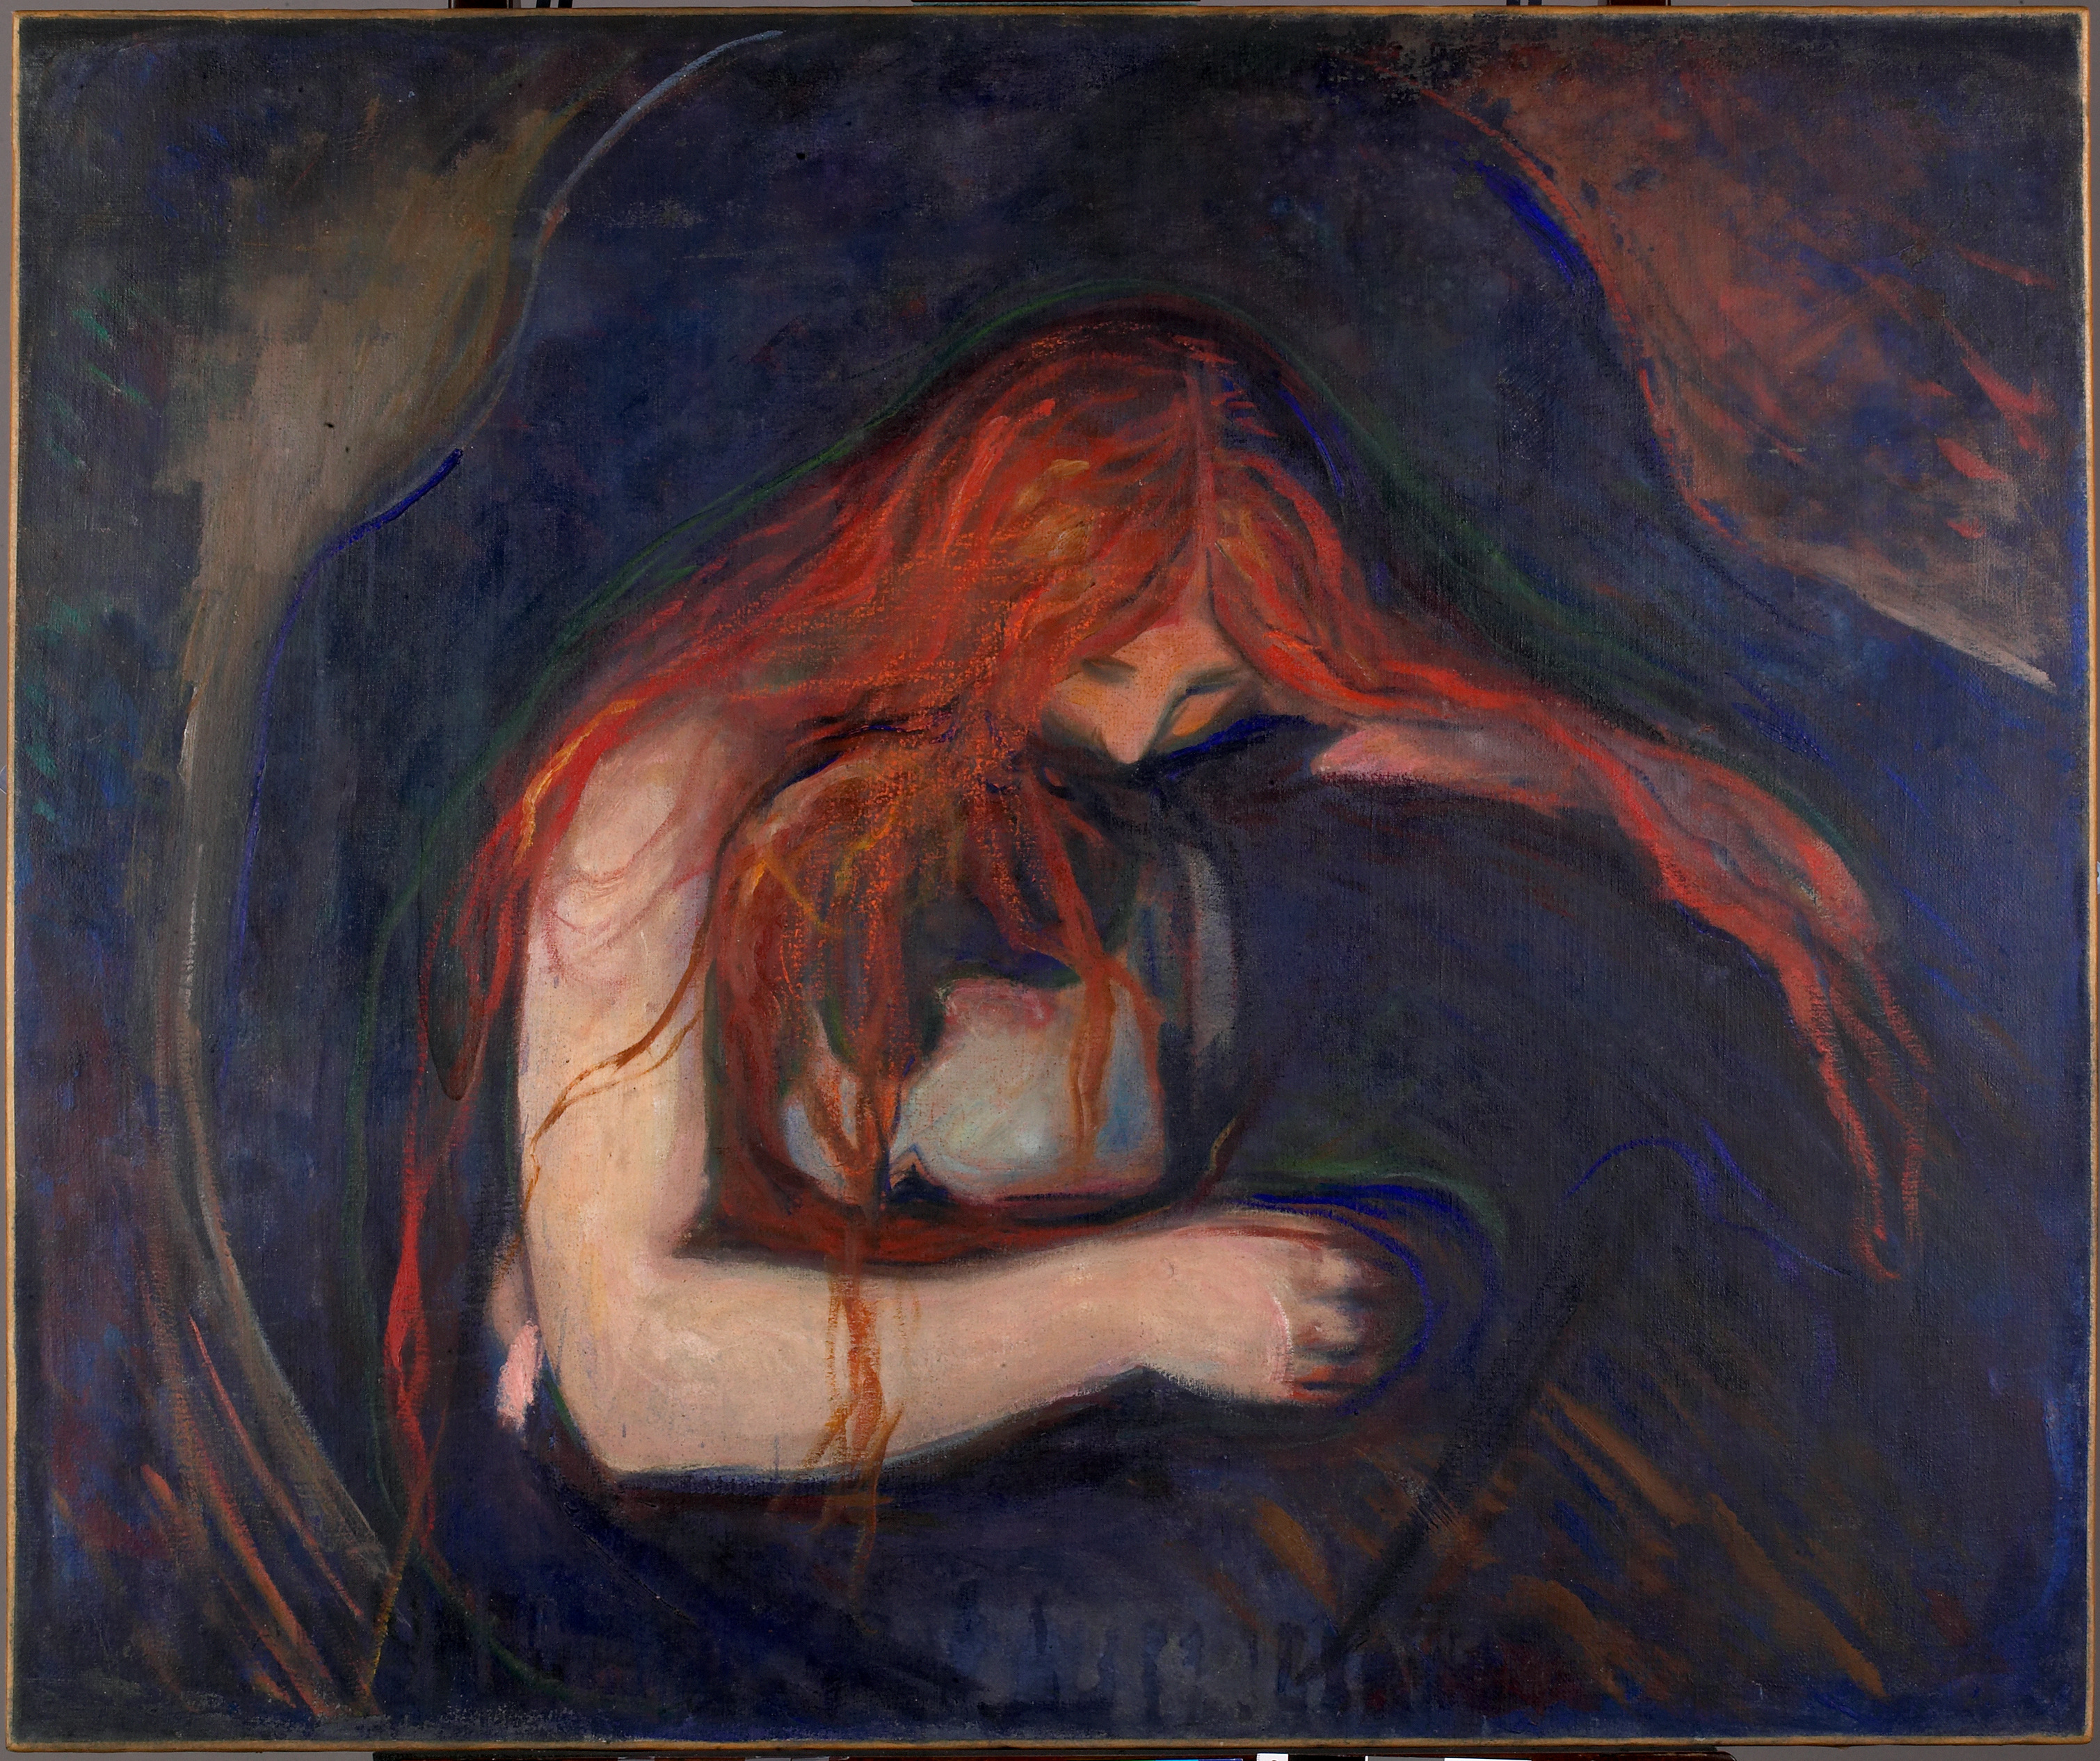 خون آشام by Edvard Munch - 1895 